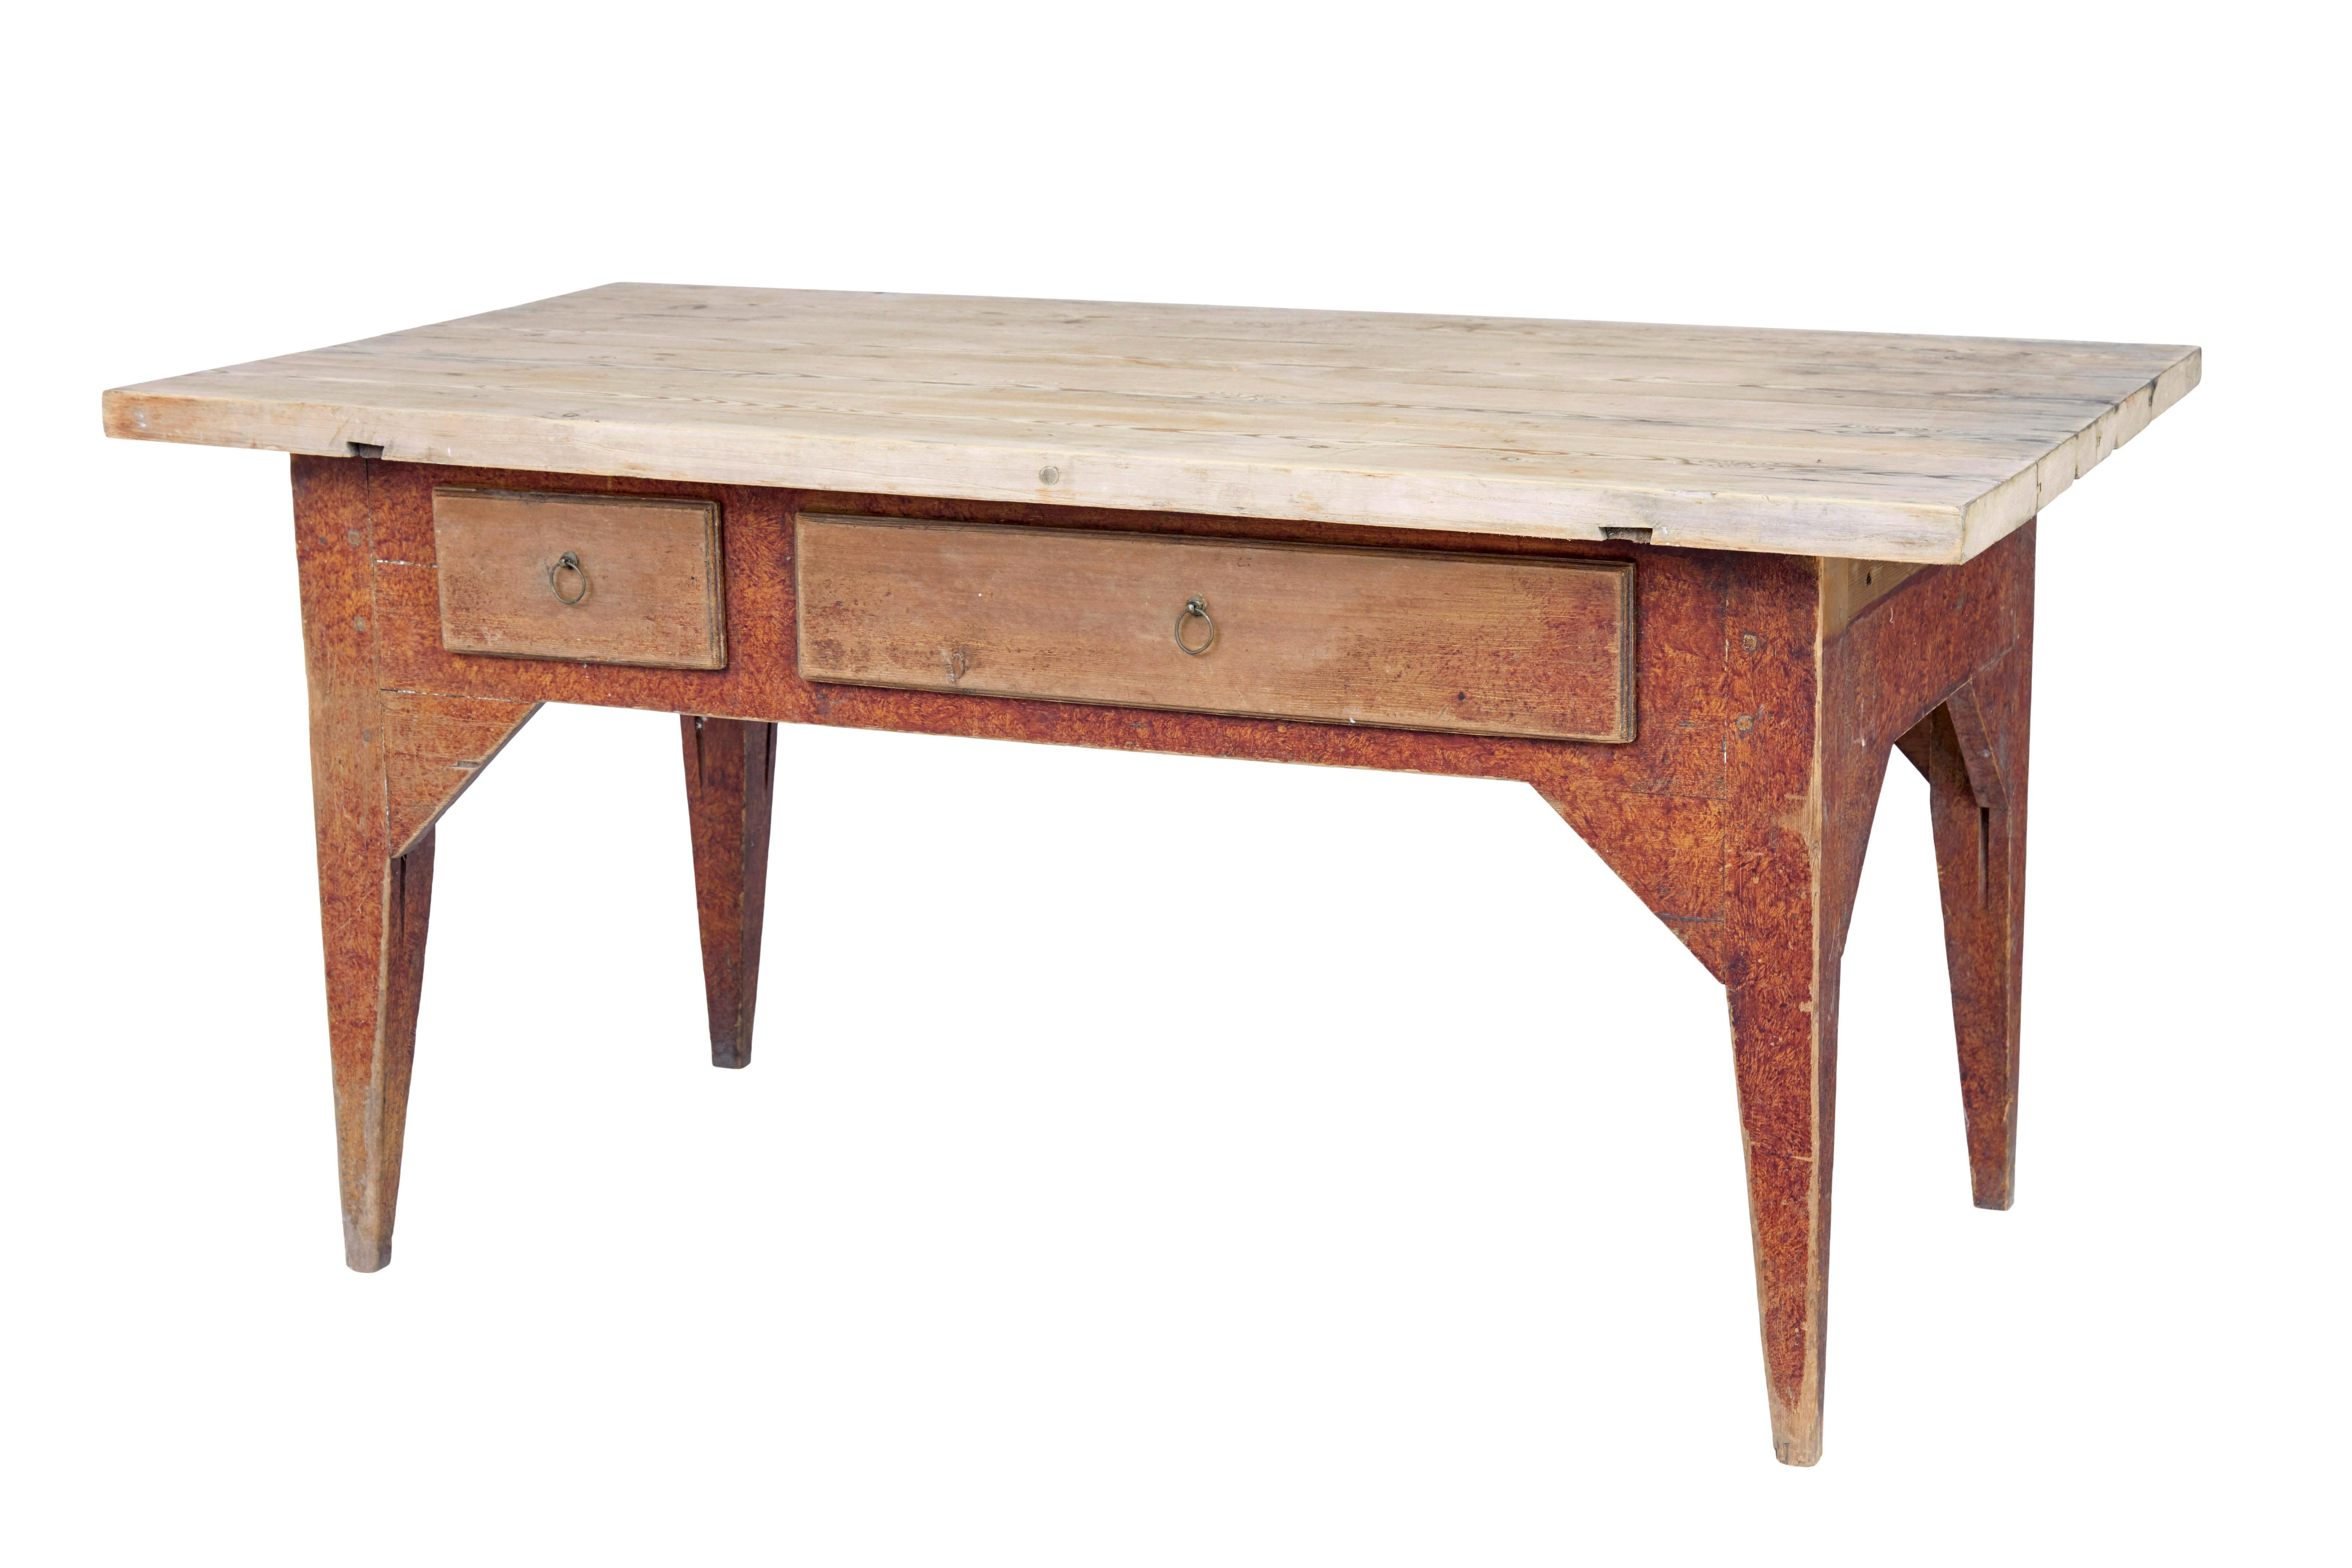 Table de cuisine rustique en pin peint du milieu du 19e siècle, vers 1850.

Table traditionnelle en pin suédois de bonne qualité avec plateau associé.

Surface épaisse de 4 planches avec des marques de surface et une patine d'usage.  Elle repose sur